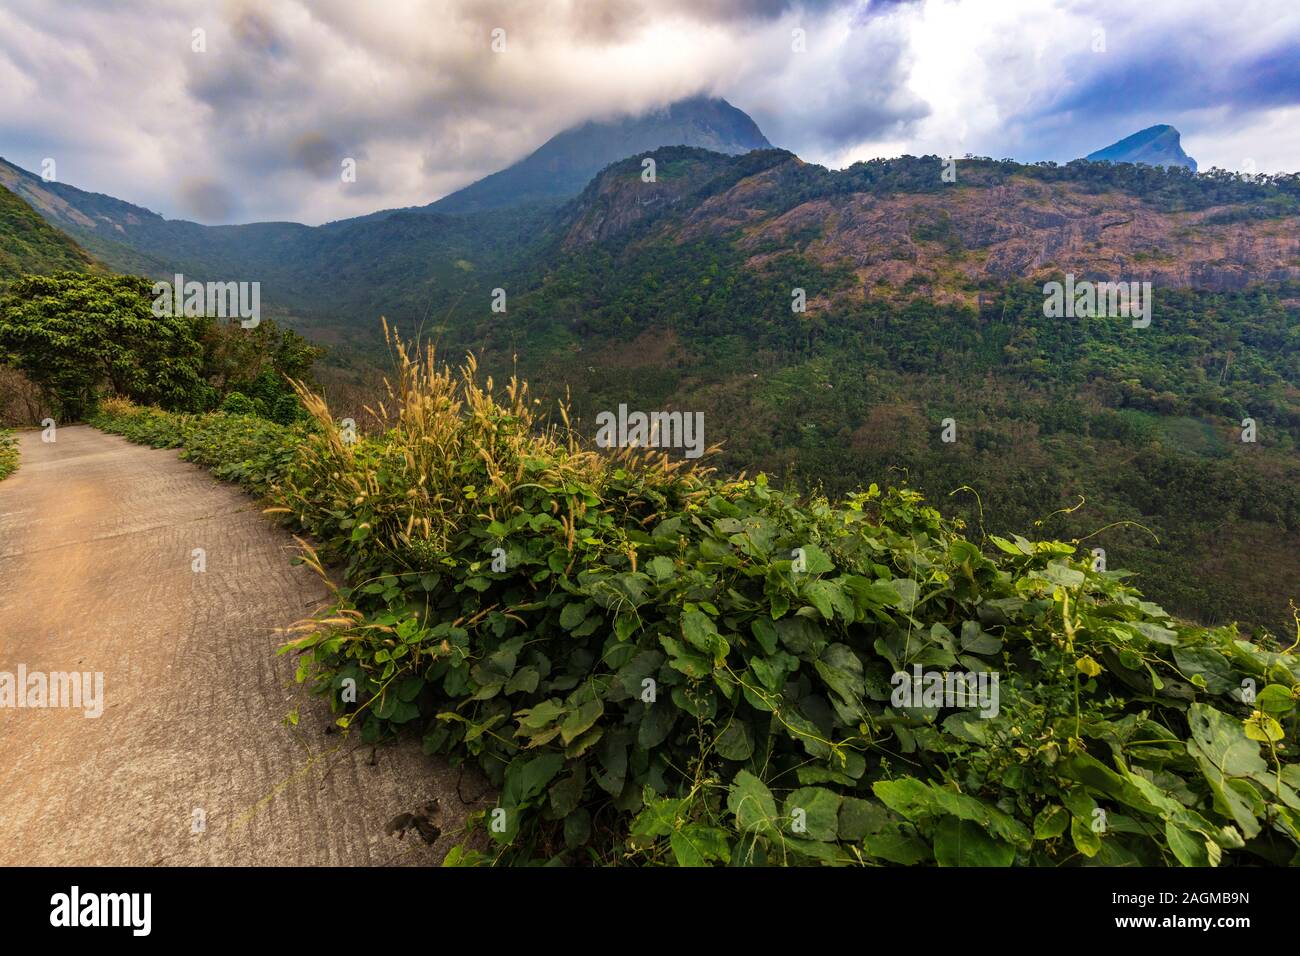 Siruvani hills and with clouds, view from at palakkayam Siruvani road, Kerala, India.ala Stock Photo